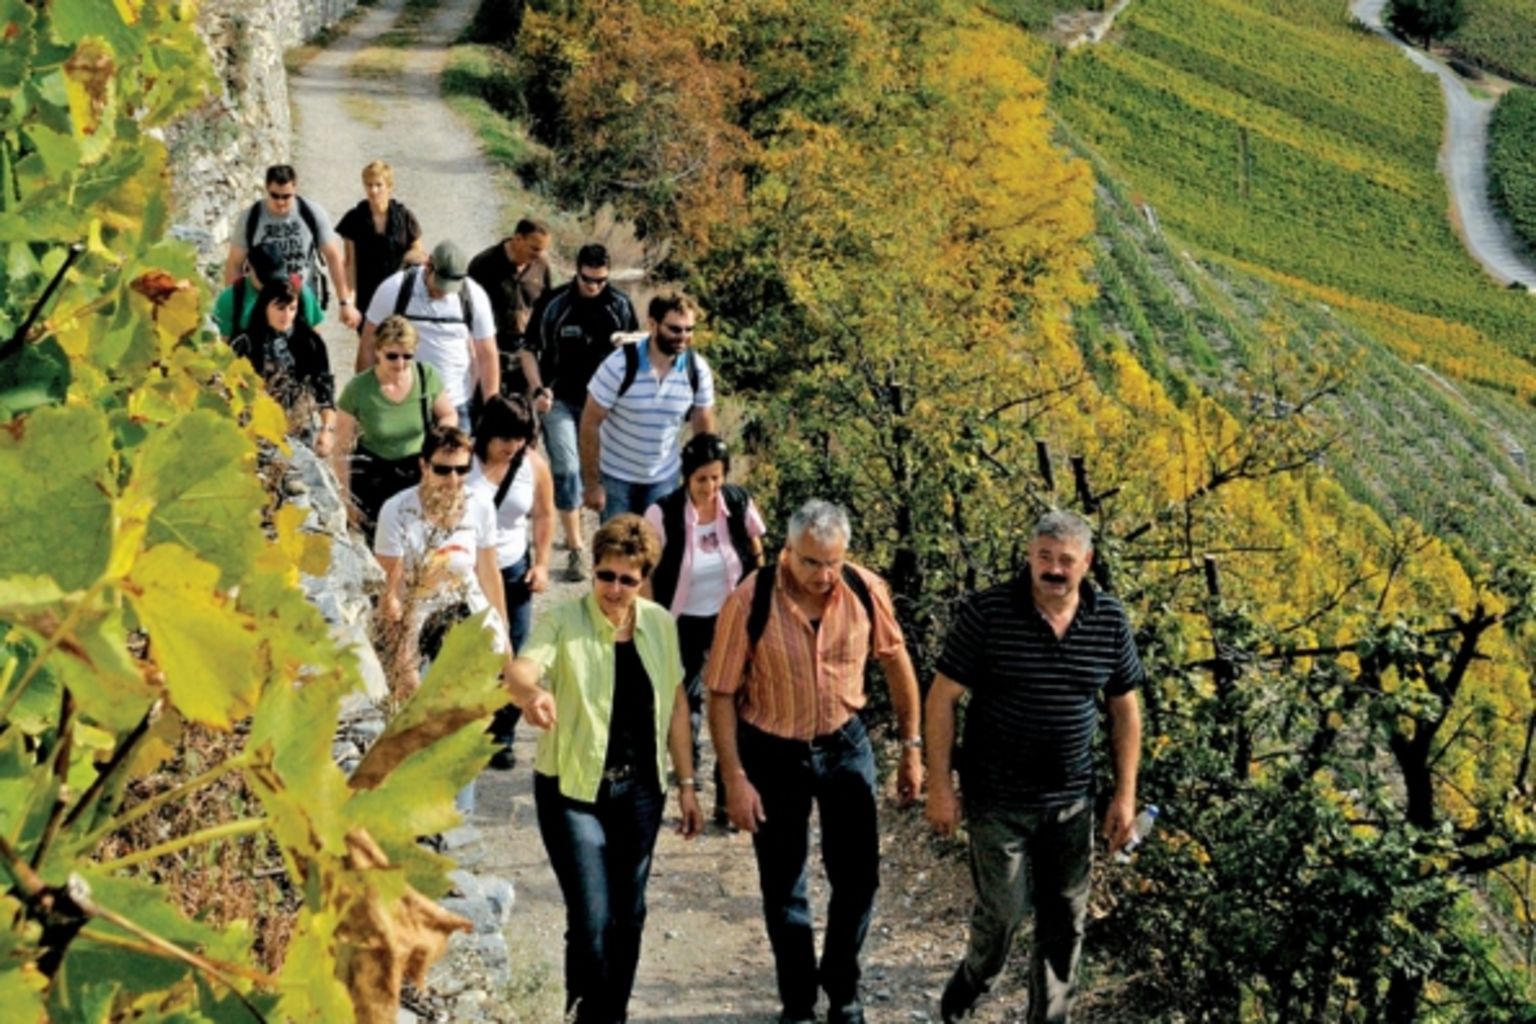 Petite Arvine, Cornalin, Rèze ou Heida: avec le team des 16 guides vinicoles, votre randonnée à travers le domaine viticole devient un véritable événement, Valais